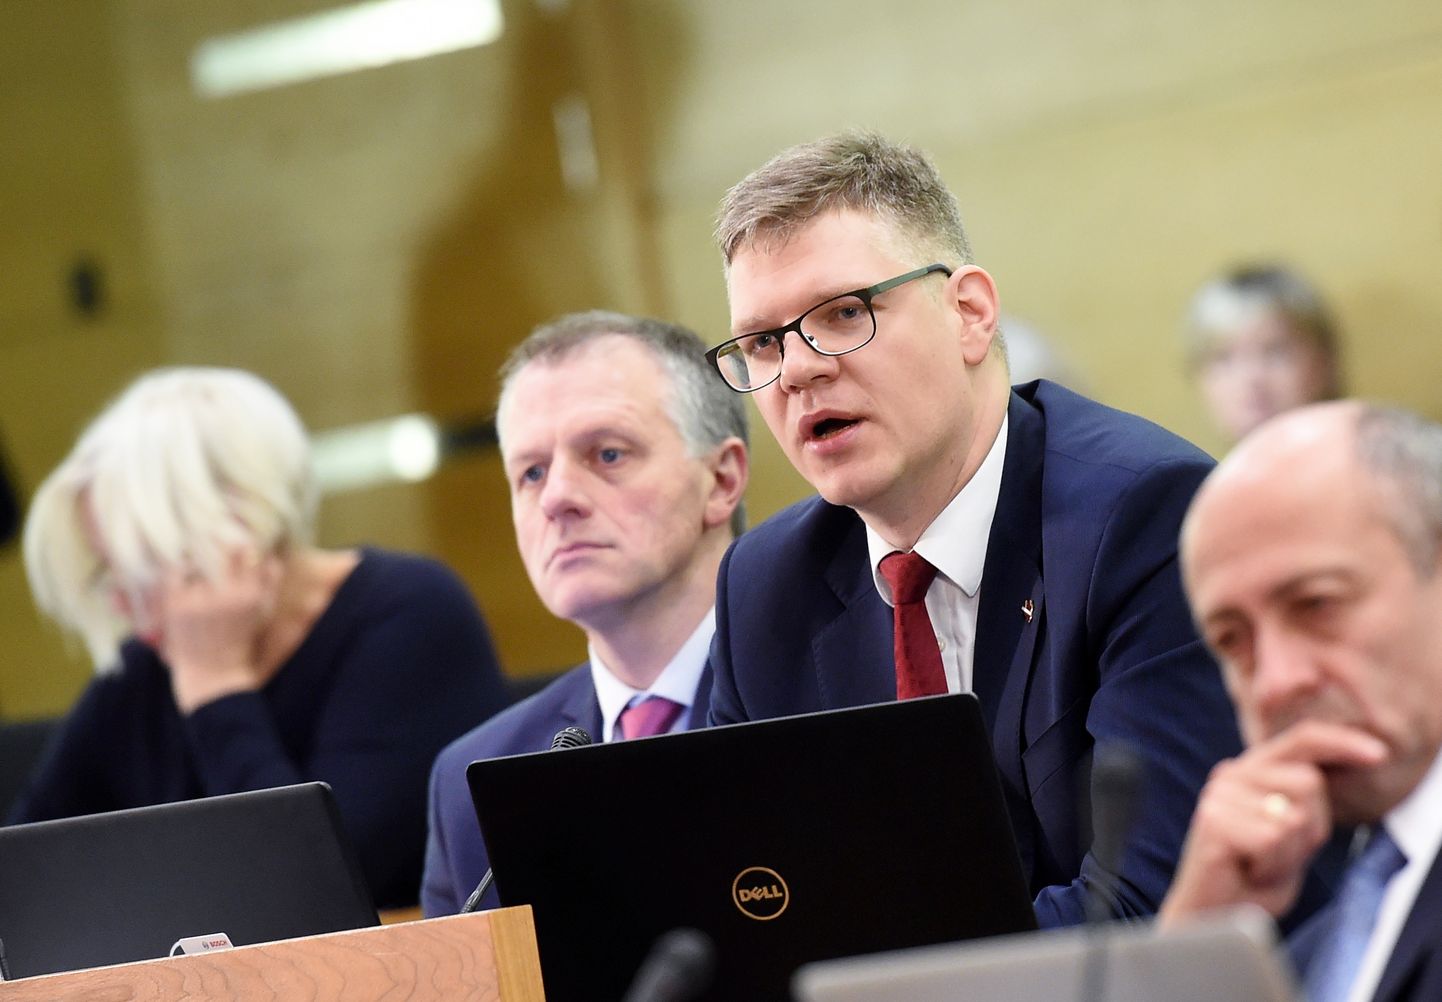 Deputāti Olafs Pulks (no kreisās) un Vilnis Ķirsis piedalās Rīgas domes sēdē, kurā lemj par pašvaldības 2018.gada budžetu.